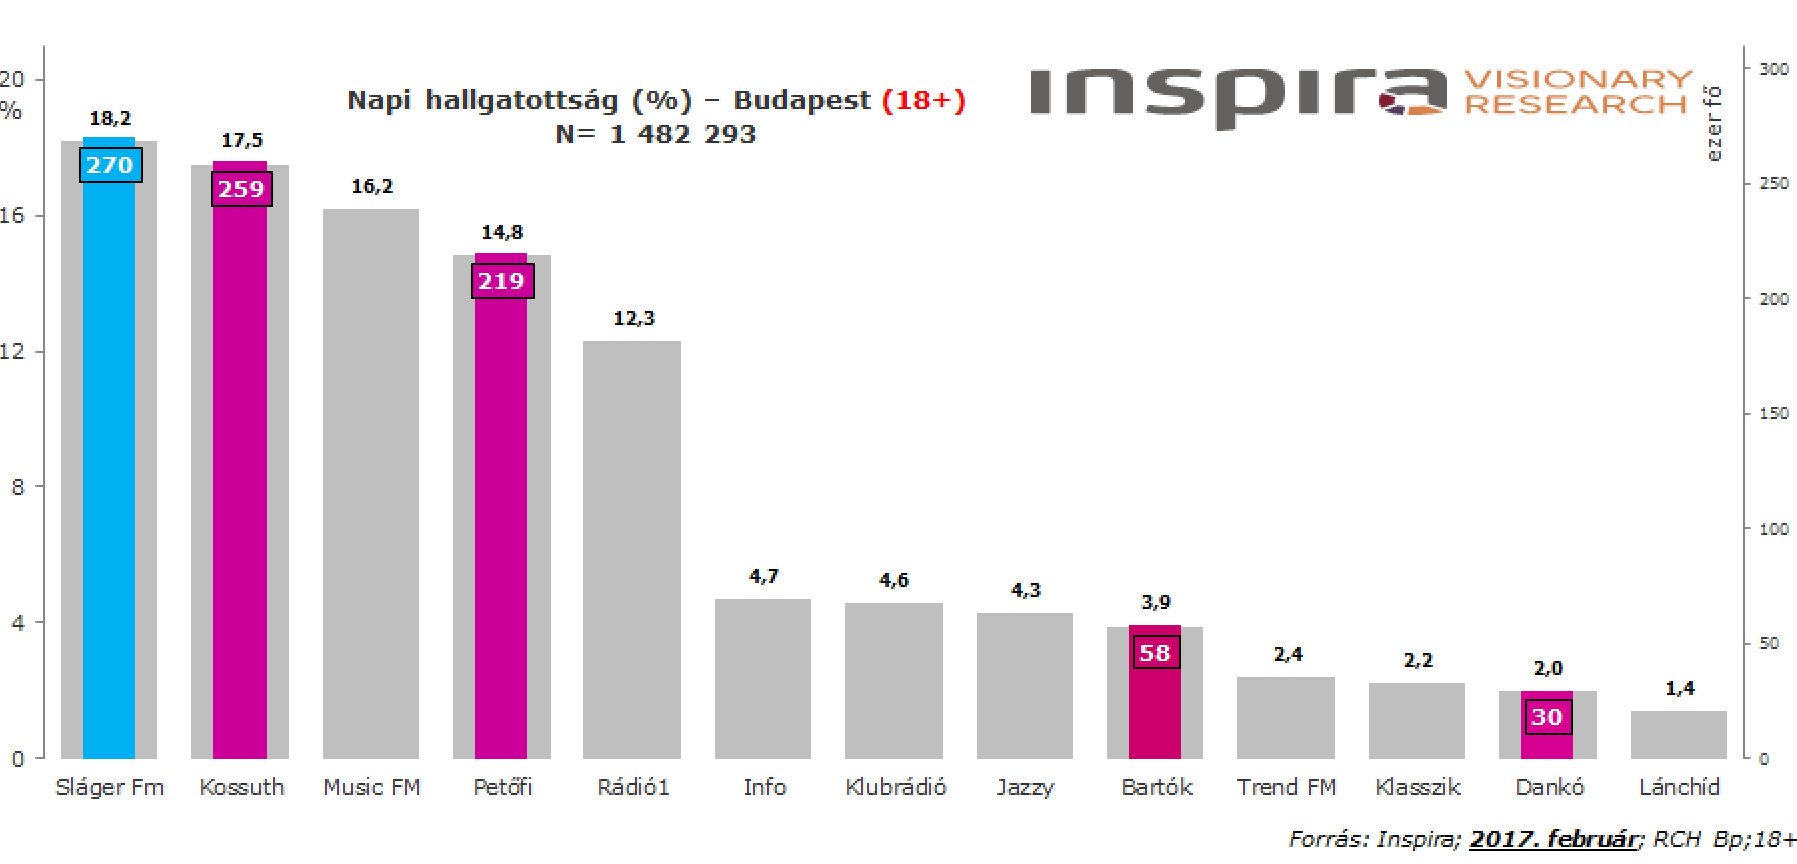 Budapesti hallgatottsági adatok a 18+-os közönség körében. Forrás: Inspira